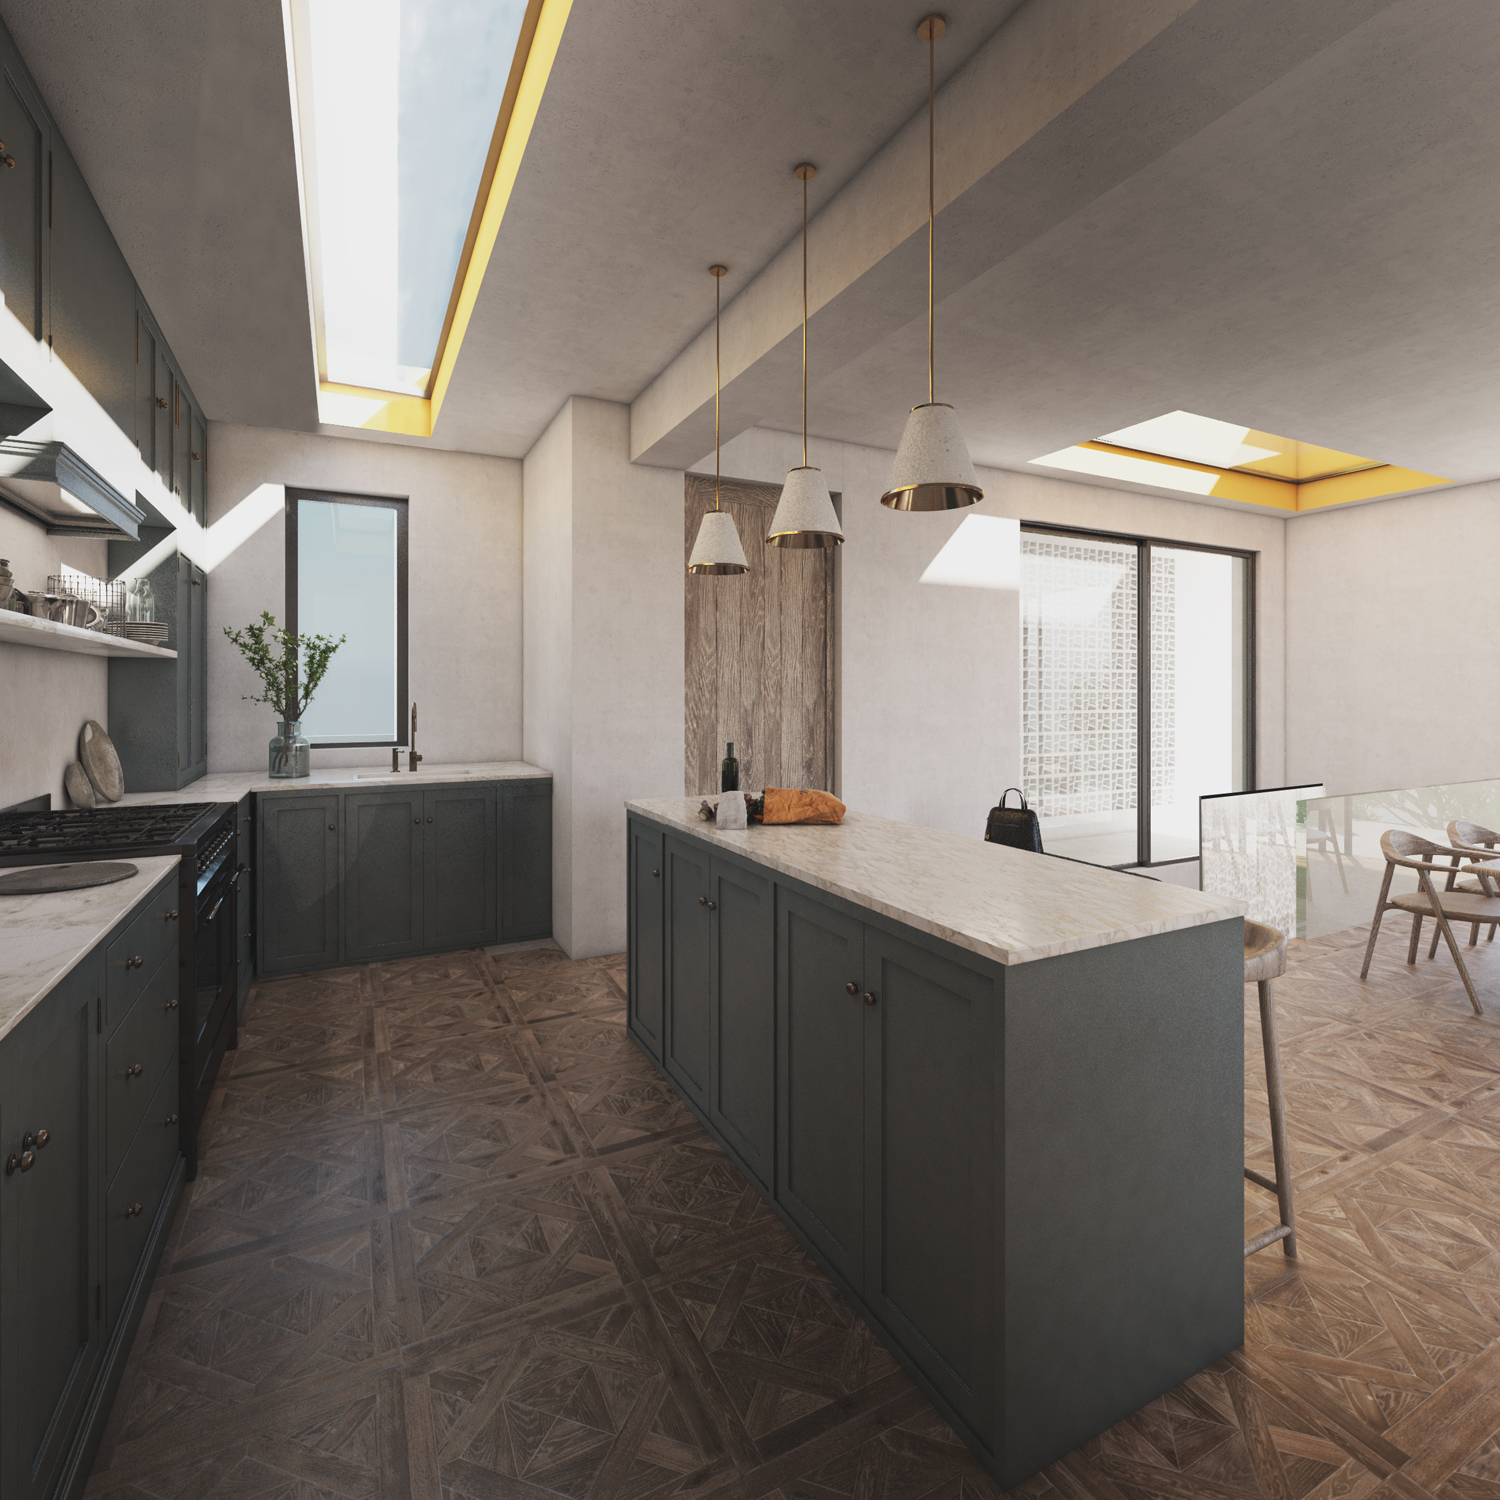 φωτορεαλιστικό render εσωτερική διακόσμηση κουζίνα κατοικία aura πελοπόννησος ελλάδα the hive architects